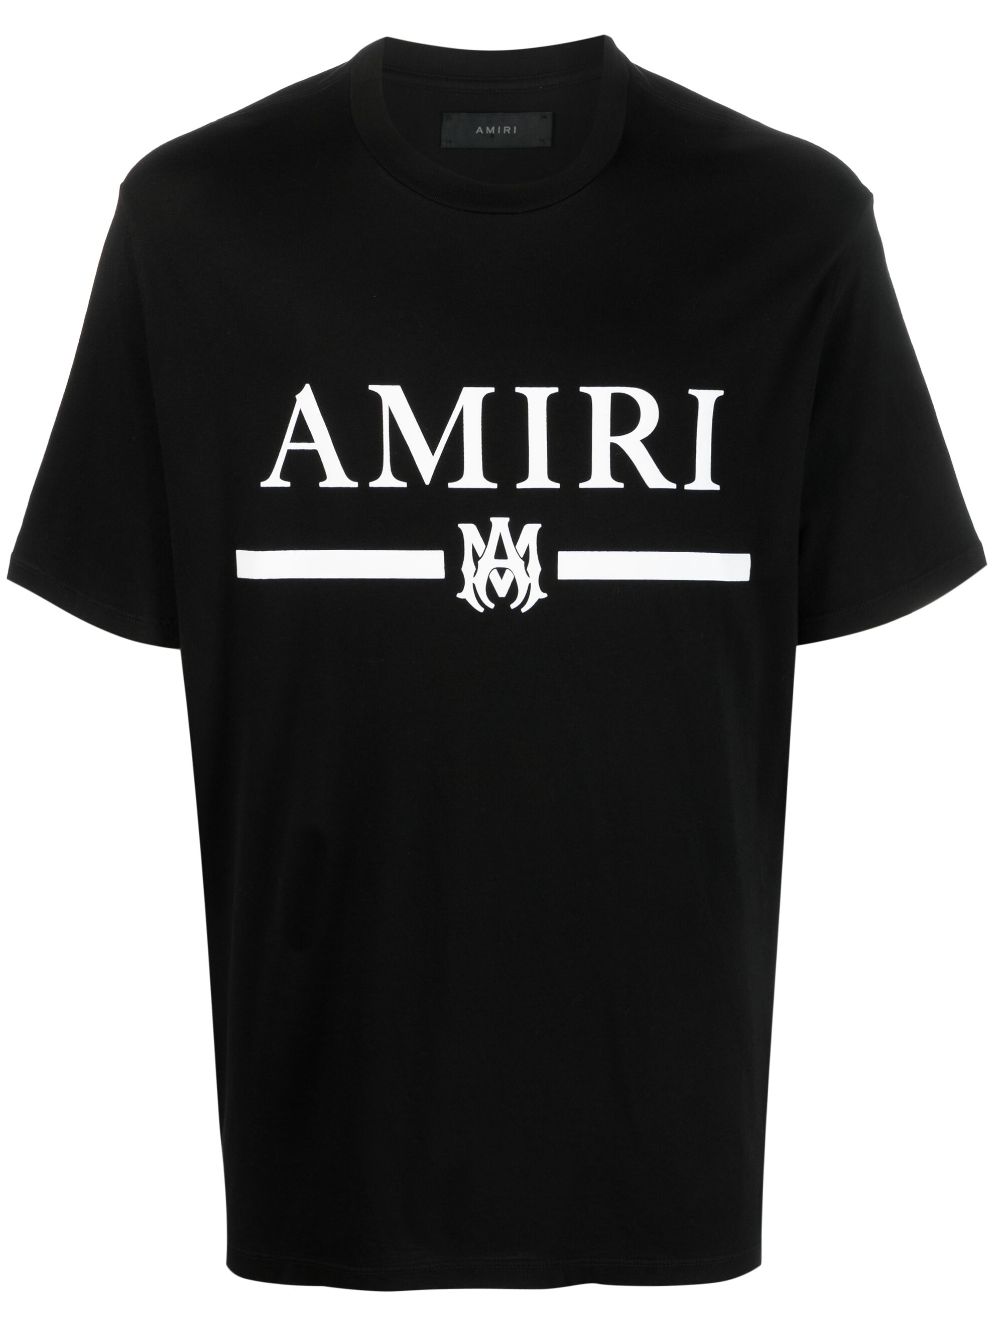 AMIRI M.A. Bar ロゴ Tシャツ - Farfetch